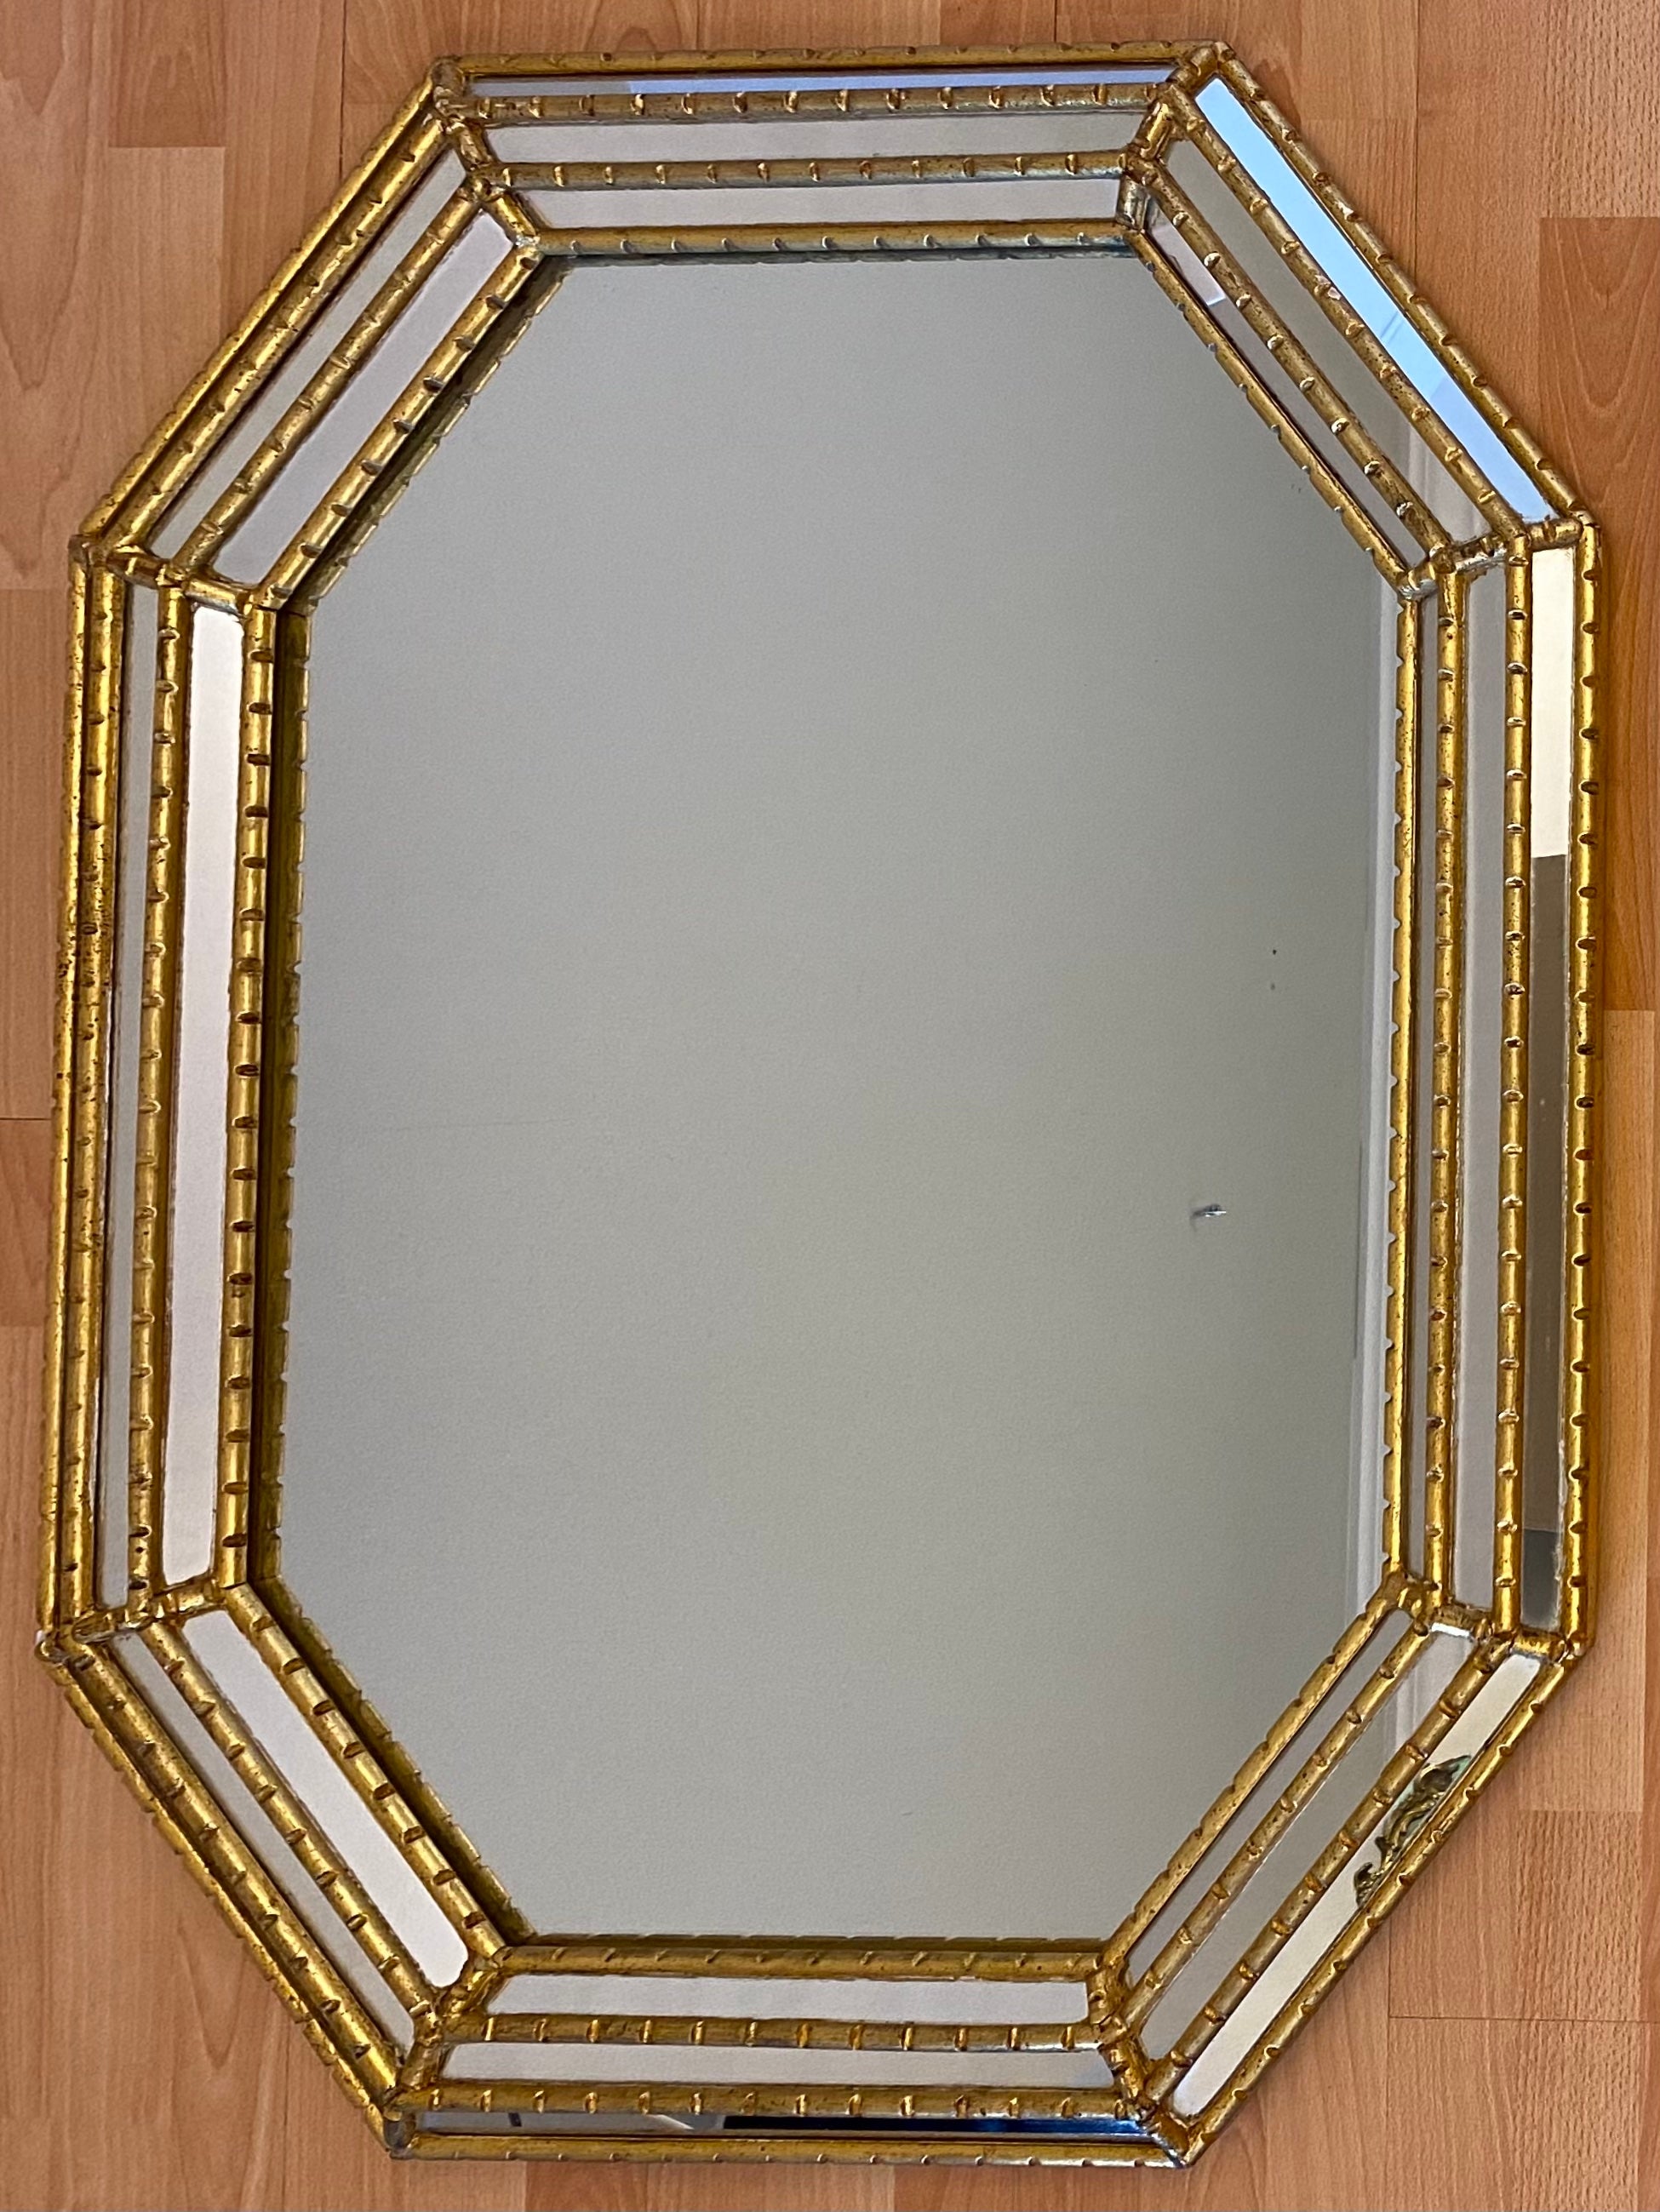 Ein hochwertiger achteckiger vergoldeter Spiegel mit dicken, dreifach abgeschrägten Kanten und einem breiten Rahmen. Dies ist eine schöne und interessante Form, die sich perfekt für einen Flur, einen Eingang über einem Konsolentisch oder einem